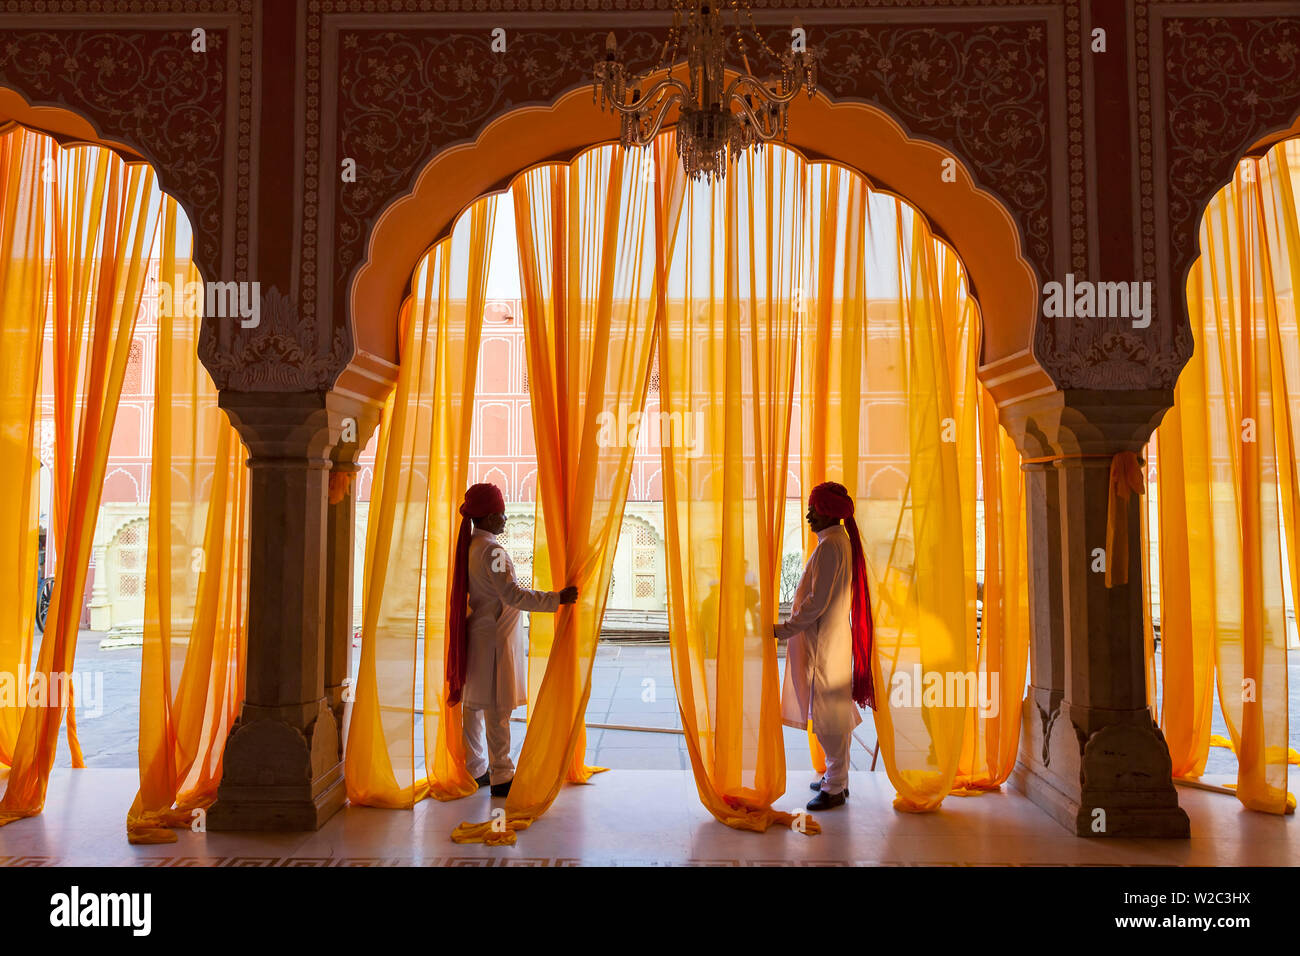 Palace attendents, Chandra Mahal (City Palace), Jaipur, Rajasthan, India. Stock Photo